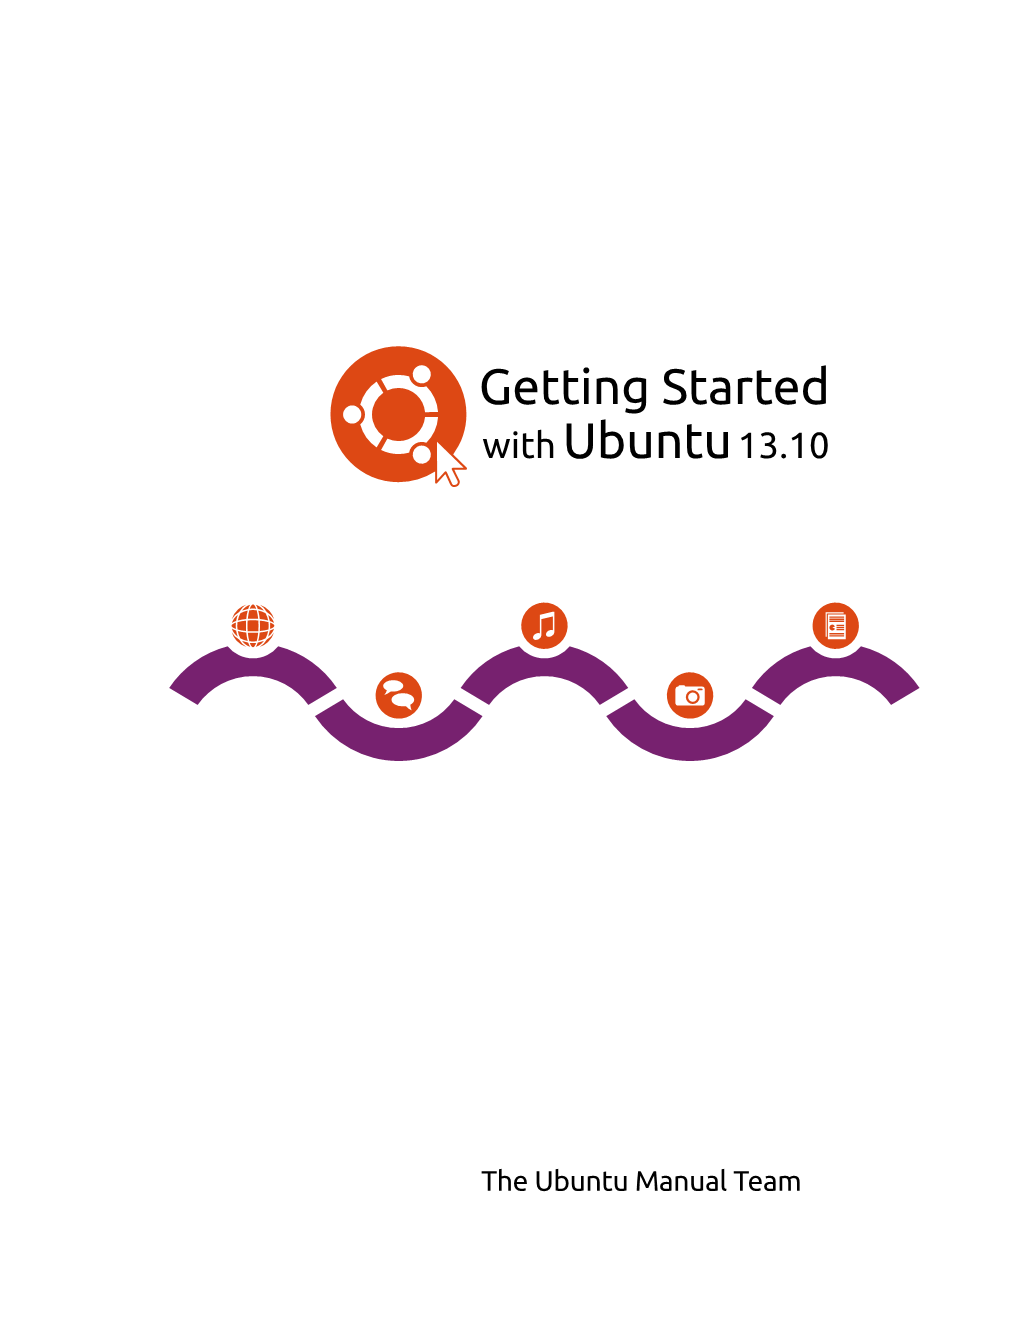 Getting Started with Ubuntu 13.10